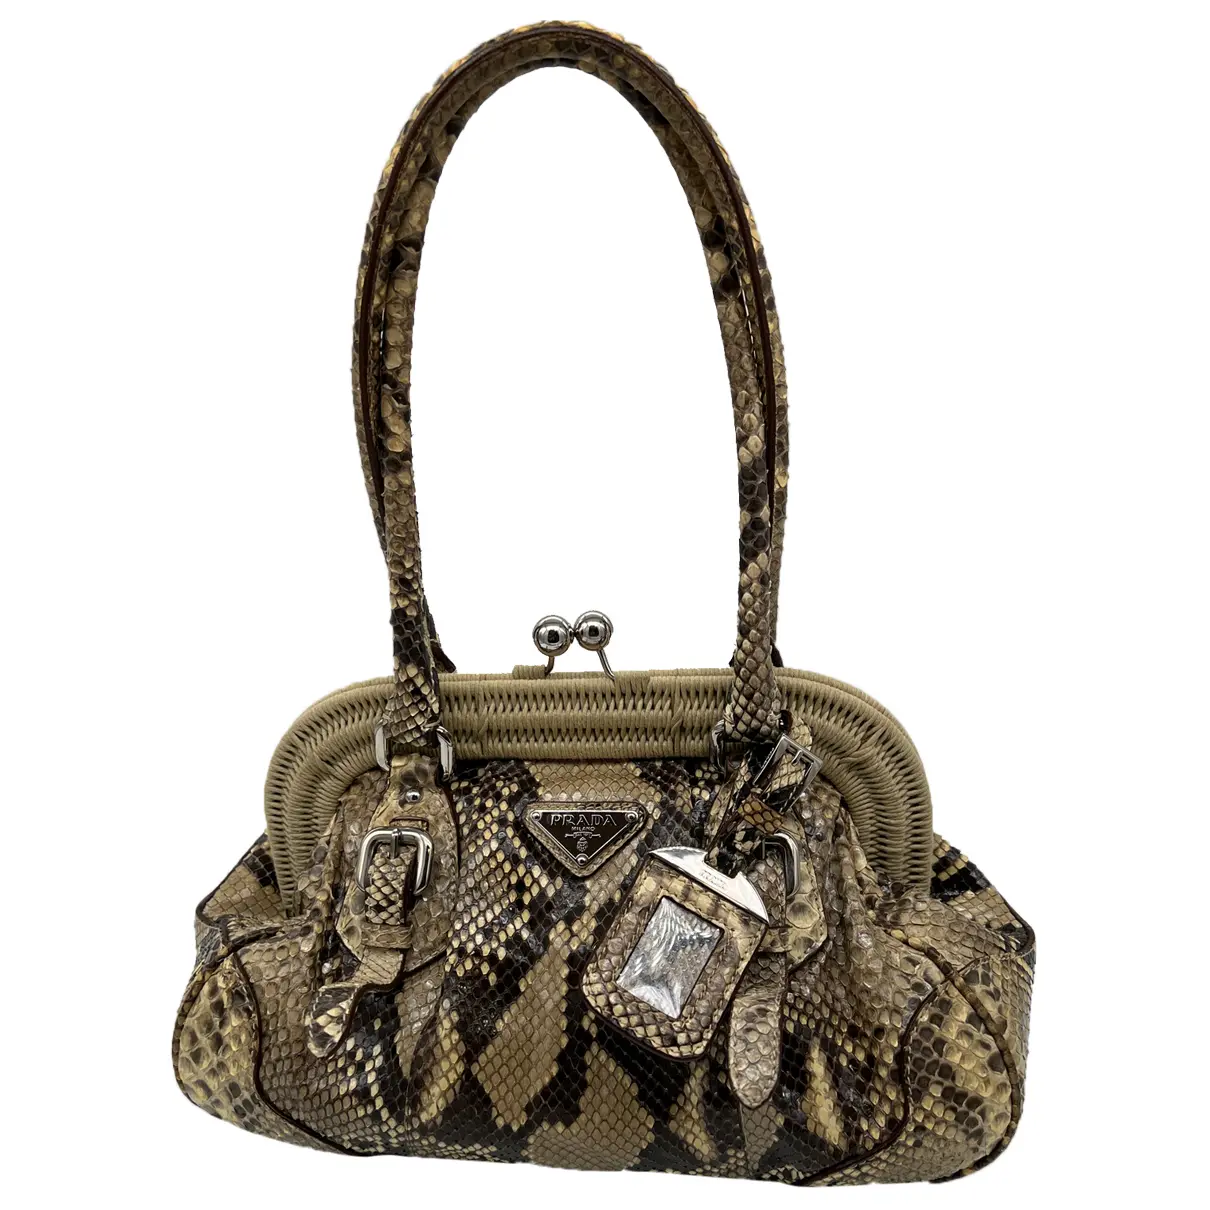 Python handbag Prada